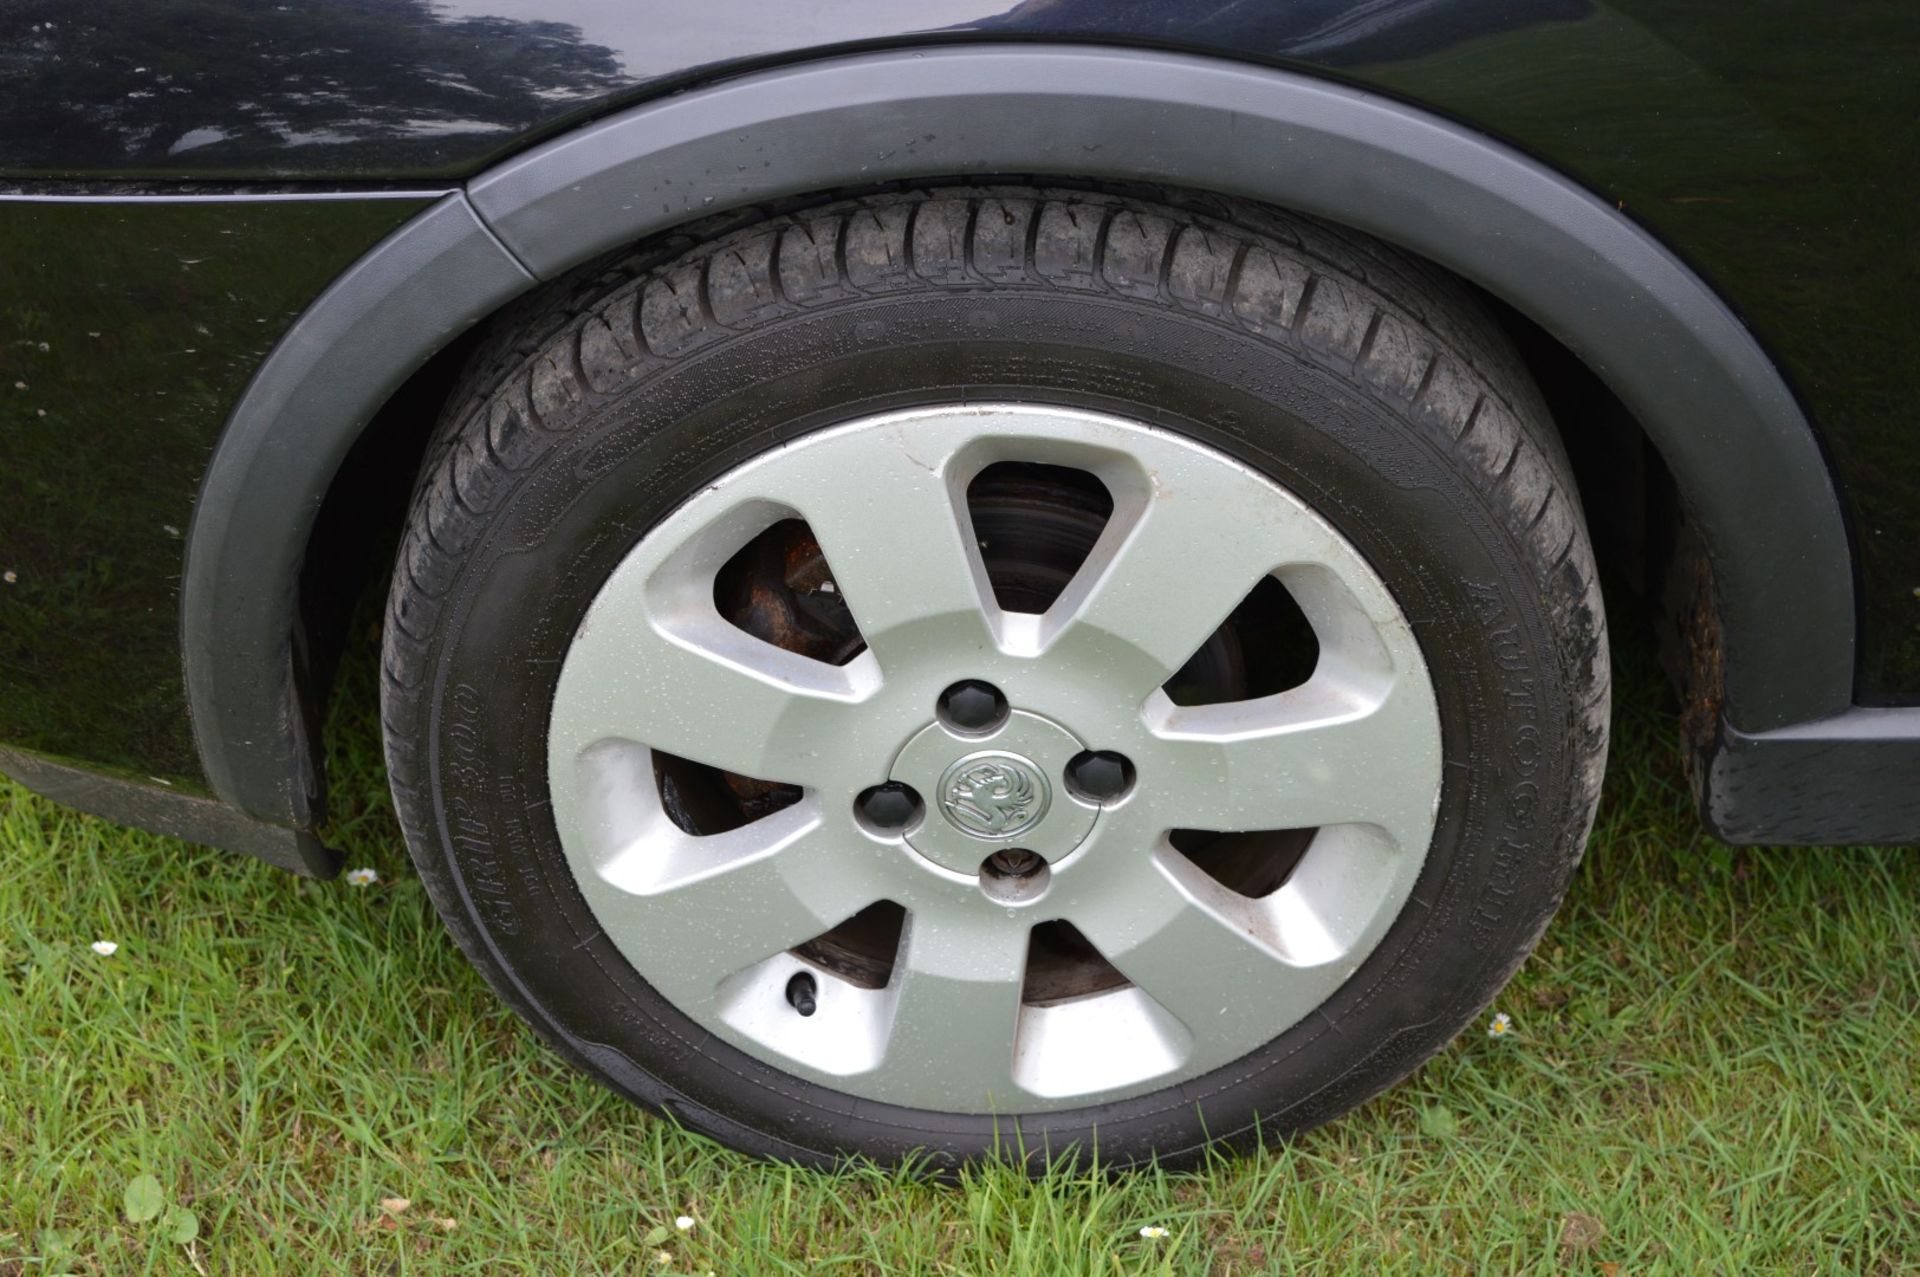 1 x Vauxhall Corsa SXI+ 3 Door Hatchback 1.2 - 2006 56 Plate - 78,000 Miles - MOT June 2018 - Image 18 of 36